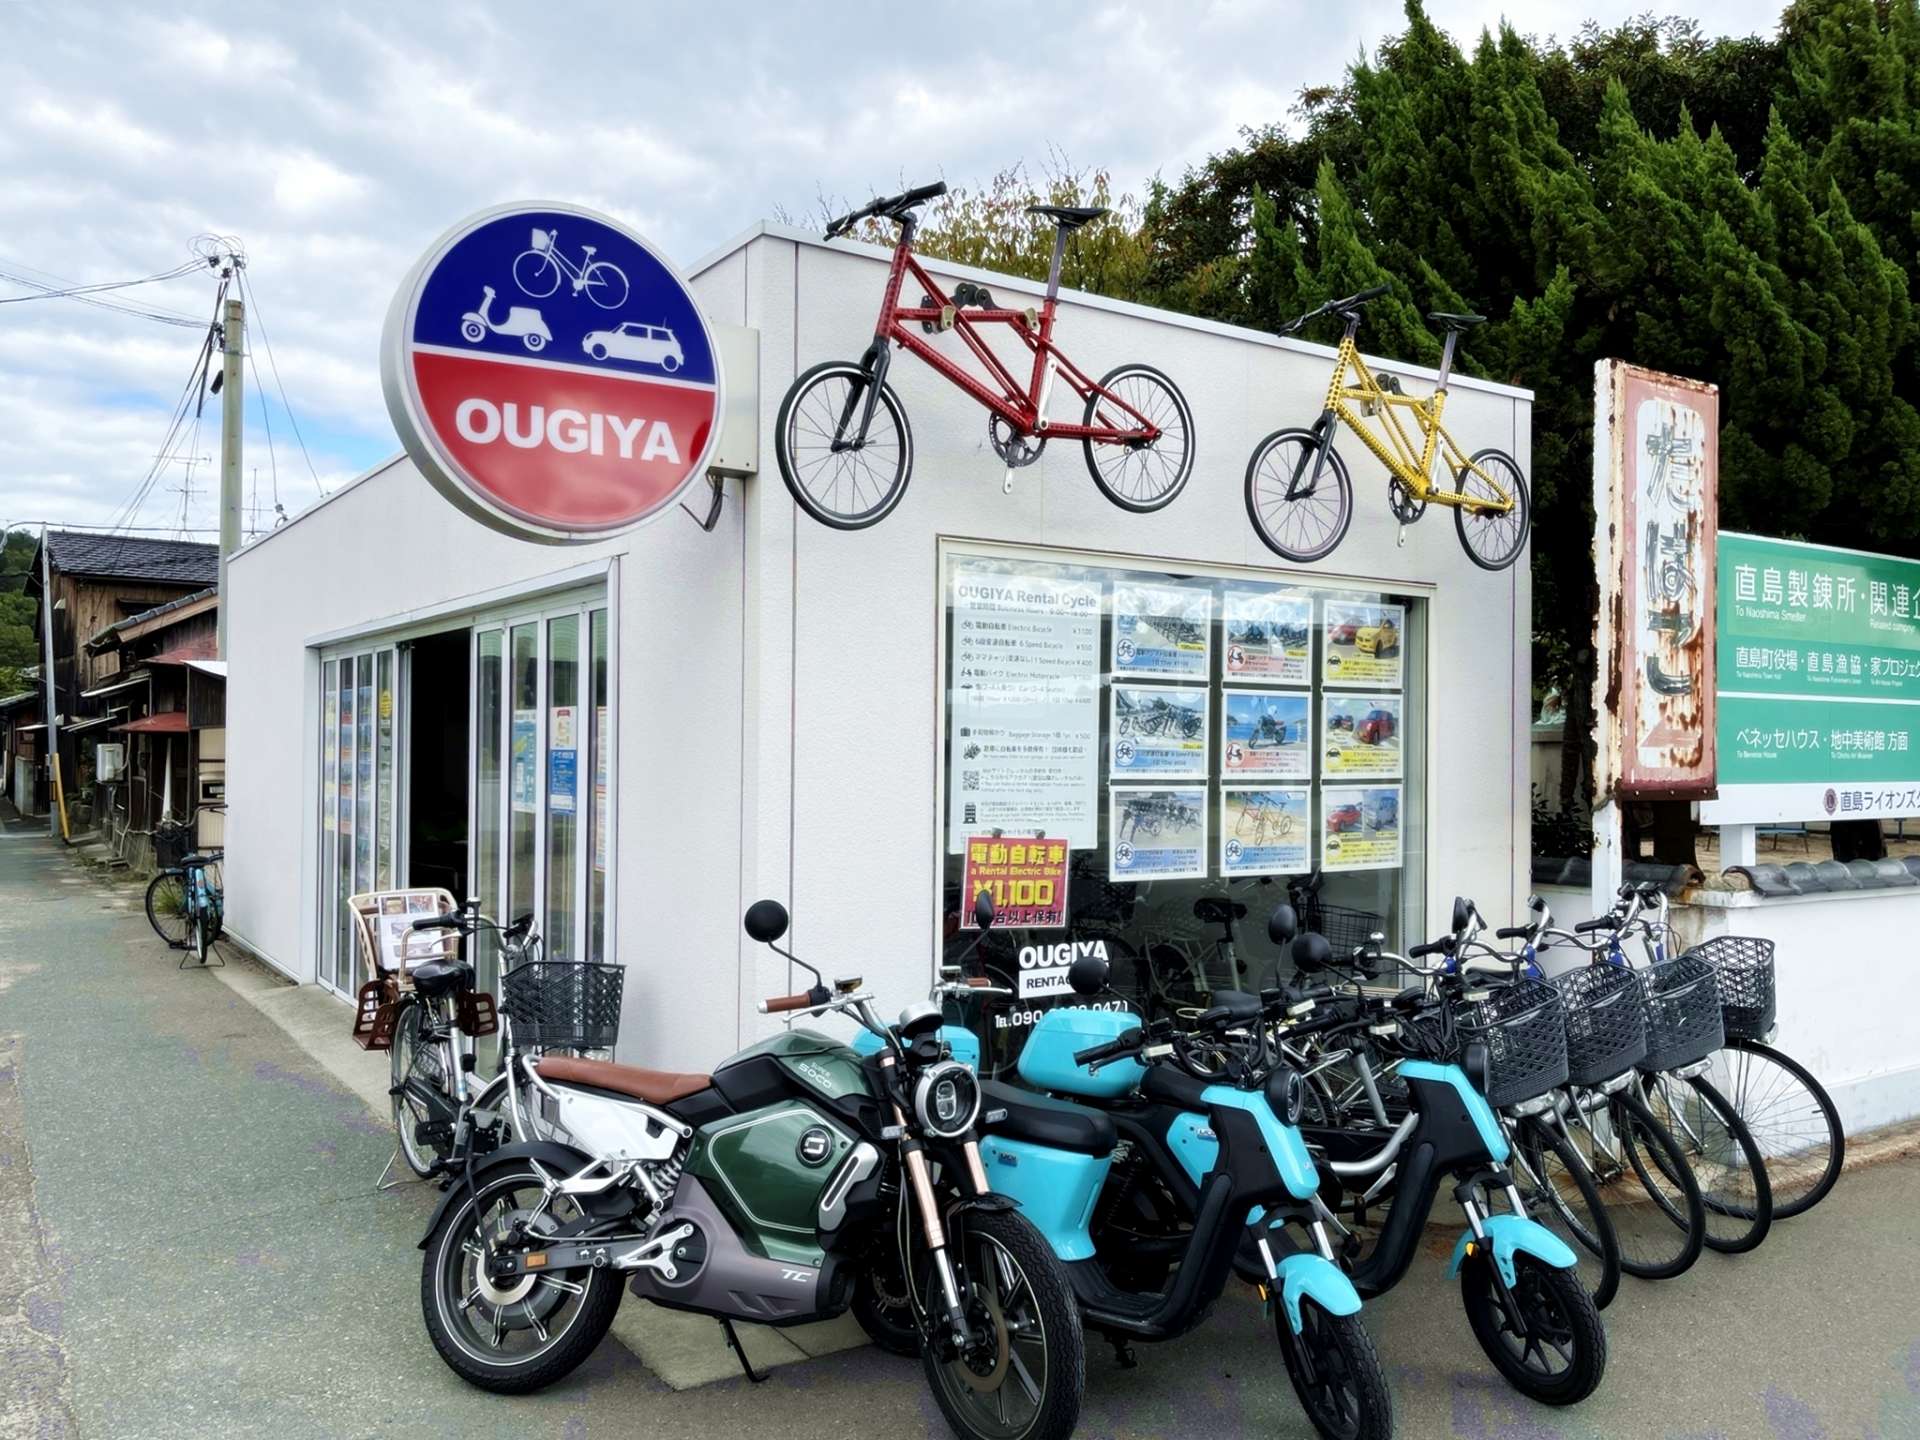 おうぎやレンタサイクル
宮浦港周辺には、こうしたレンタサイクル・レンタルバイクのショップがいくつかあります。